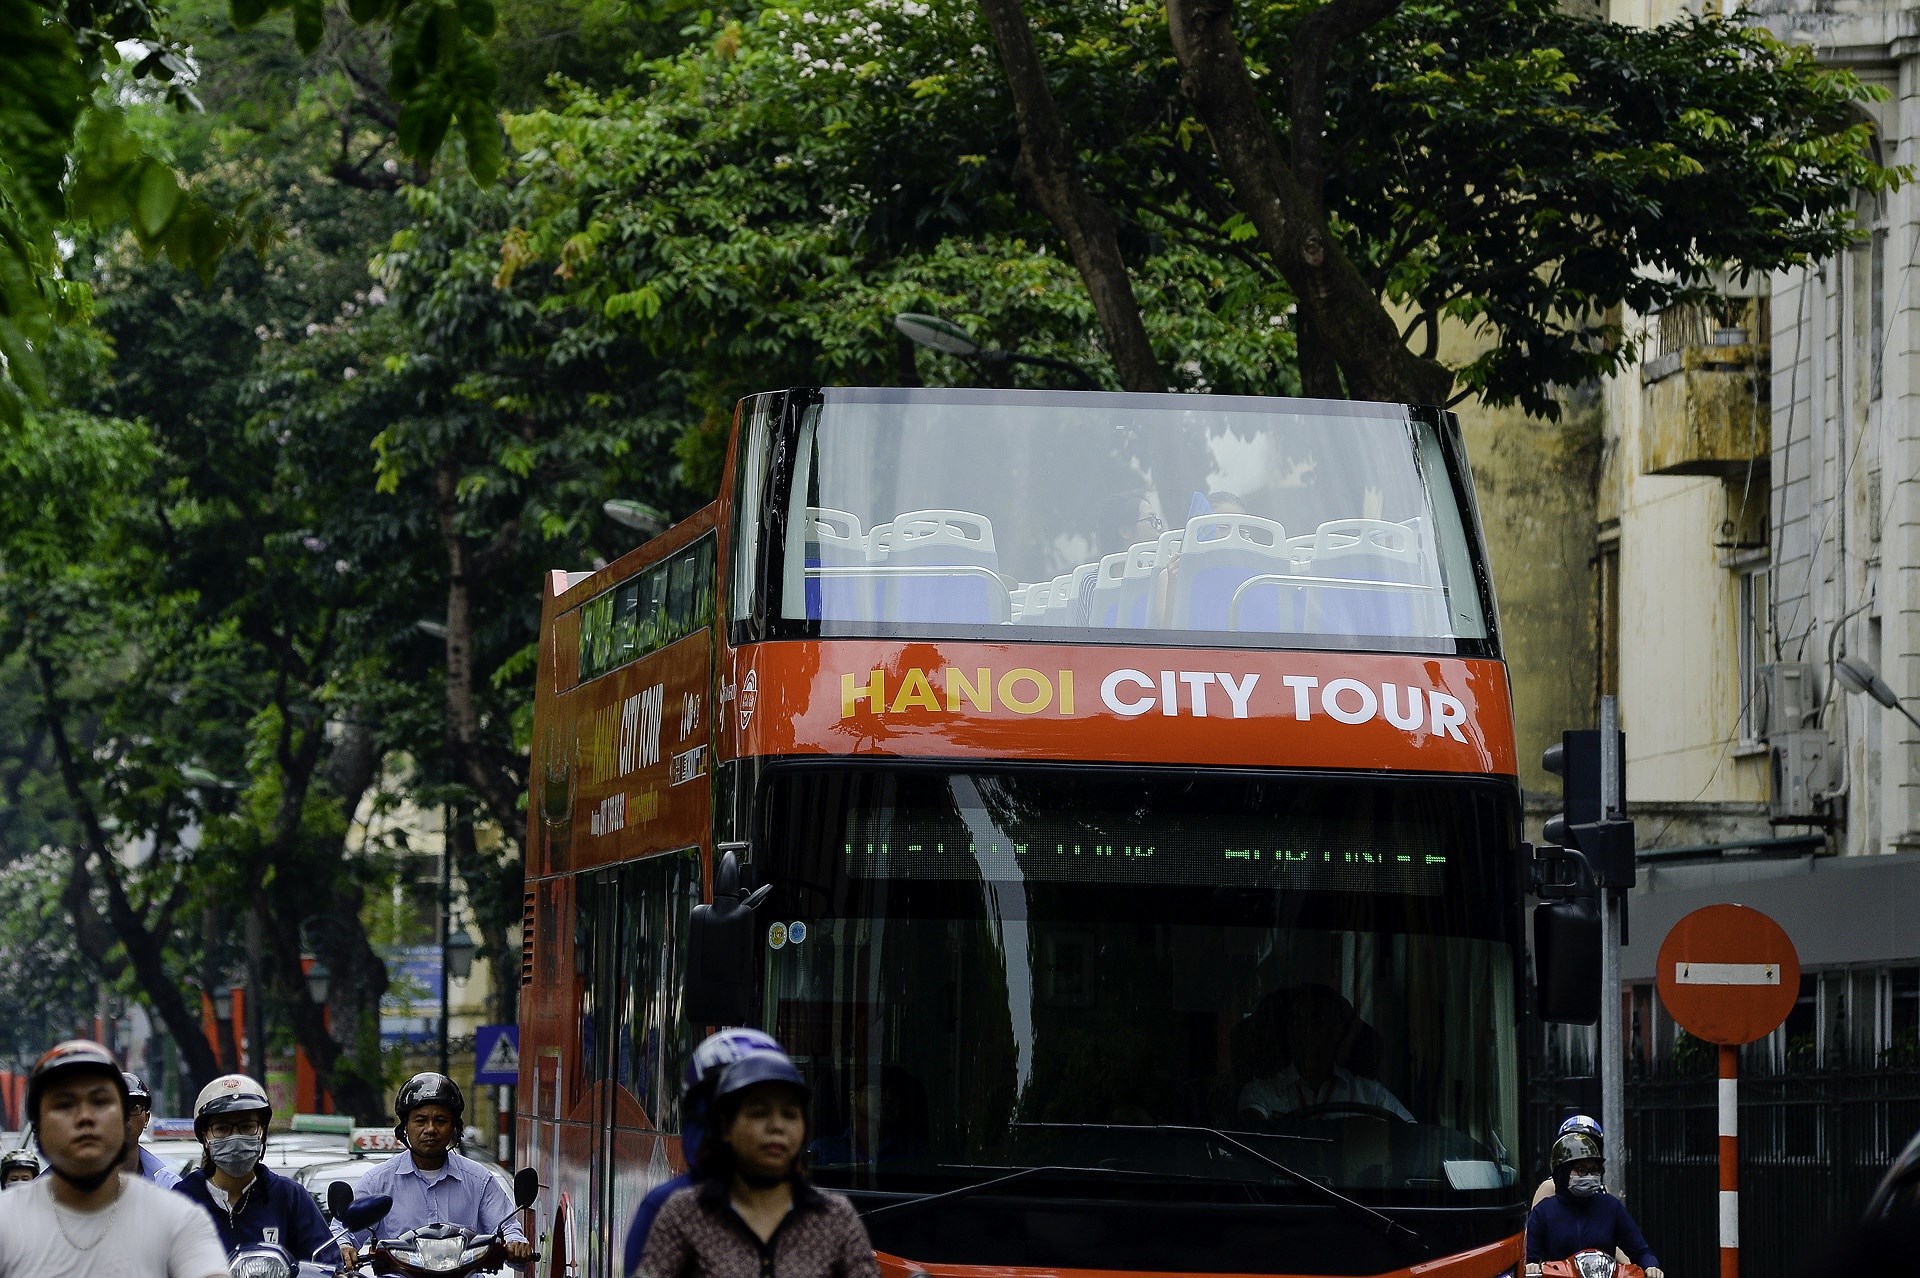 Decouvrir Hanoi a partir des bus a imperiale hinh anh 5